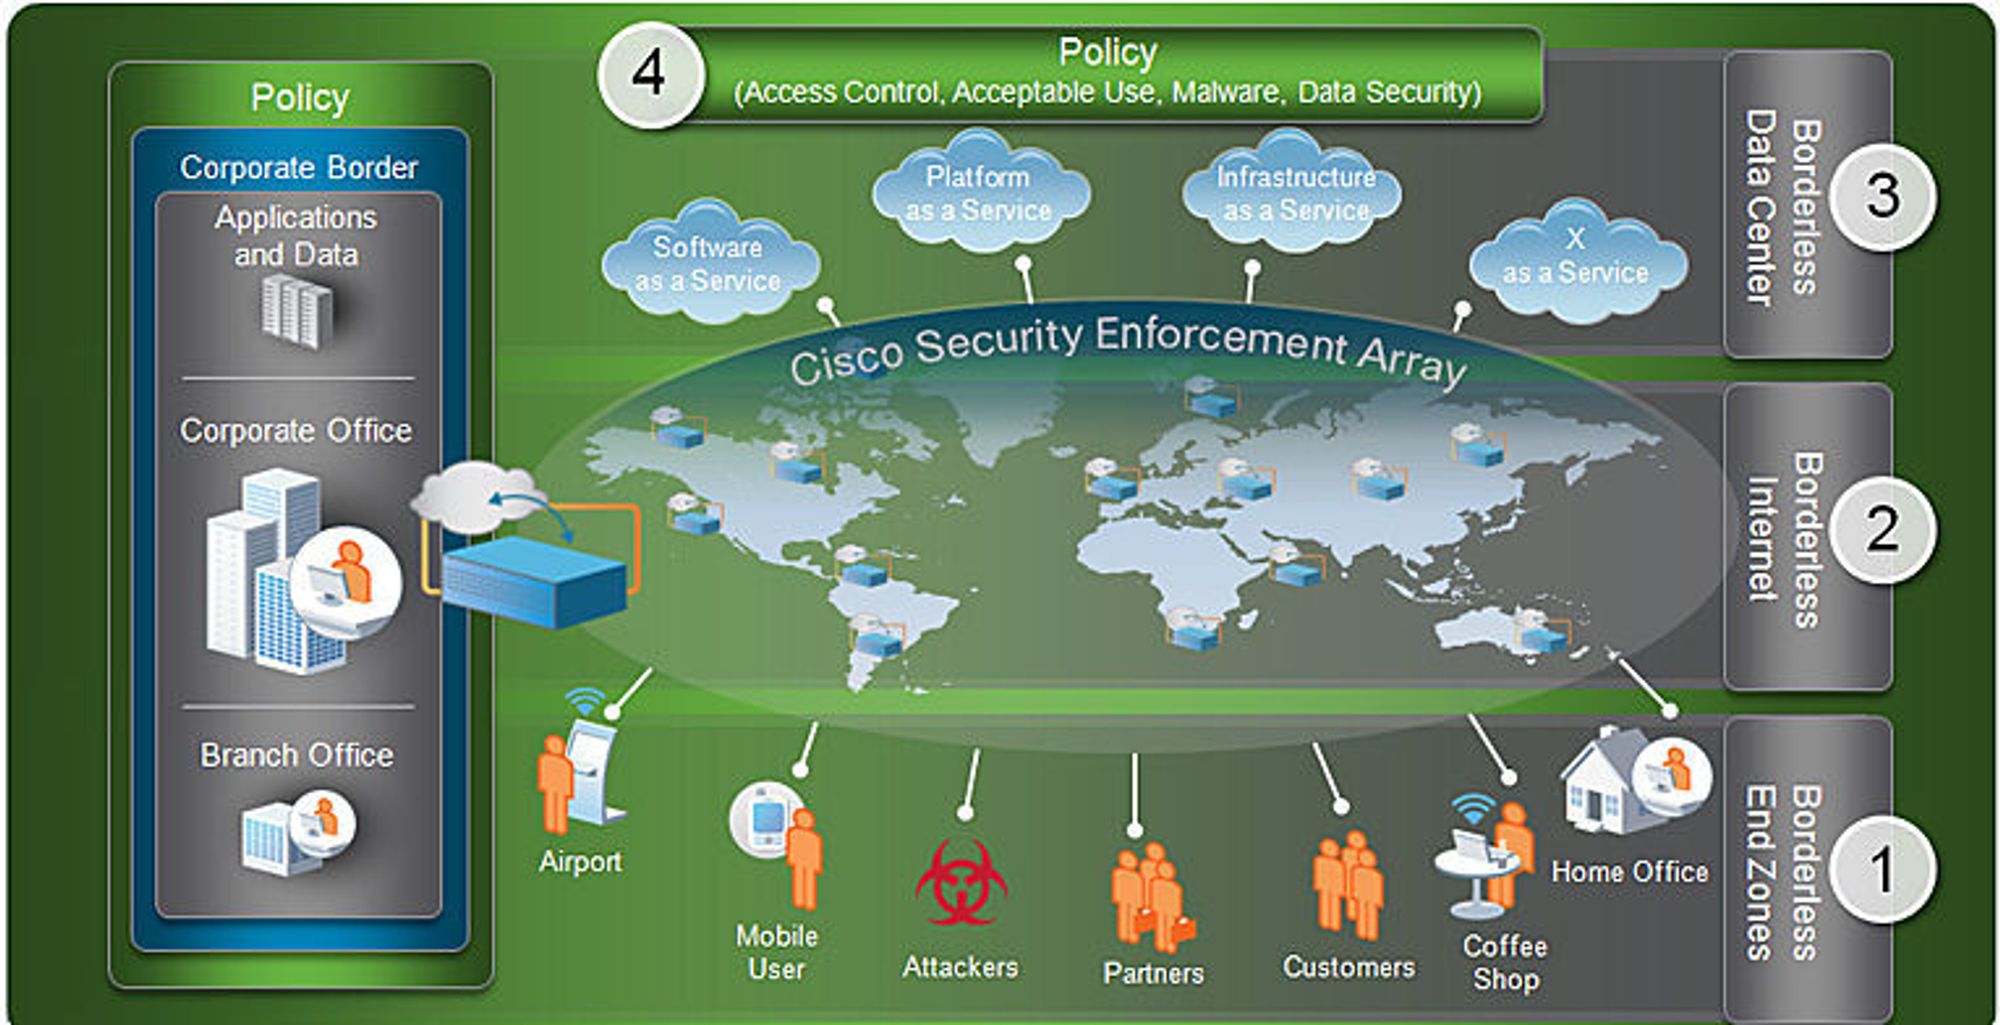 Ciscos «Secure Borderless Network Architecture» skal sikre alle brukere i IT-miljøer preget av mobilitet og tjenester i nettskyen. Sikkerheten skal håndheves gjennom nettverksenheter &amp;#8211; «Cisco Security Enforcement Array» &amp;#8211; som i prinsippet kan plasseres hvor som helst, og som sikrer både datasentral og klienter straks disse koples til nettet. Sikkerhetsregler styres under ett overfor alle brukere og alle tjenester. Tjenester som forutsetter et festningsverk rundt interne tjenester, for eksempel VPN, blir overflødige etter denne modellen.